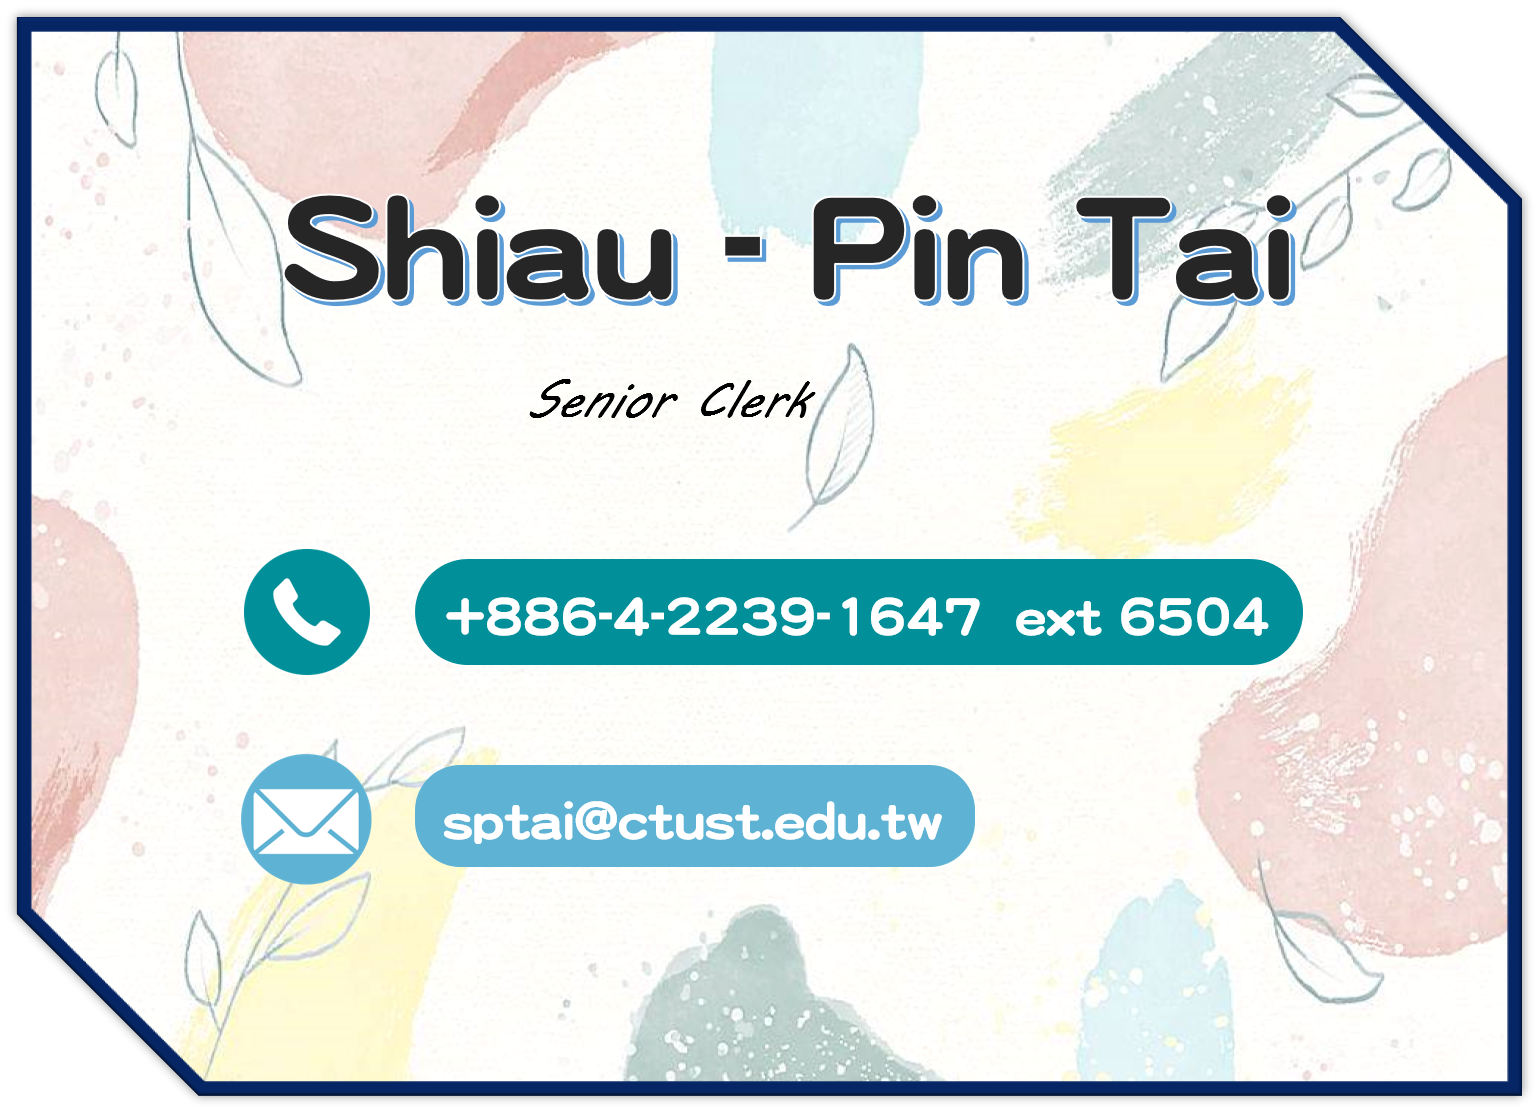 Shiau - Pin Tai